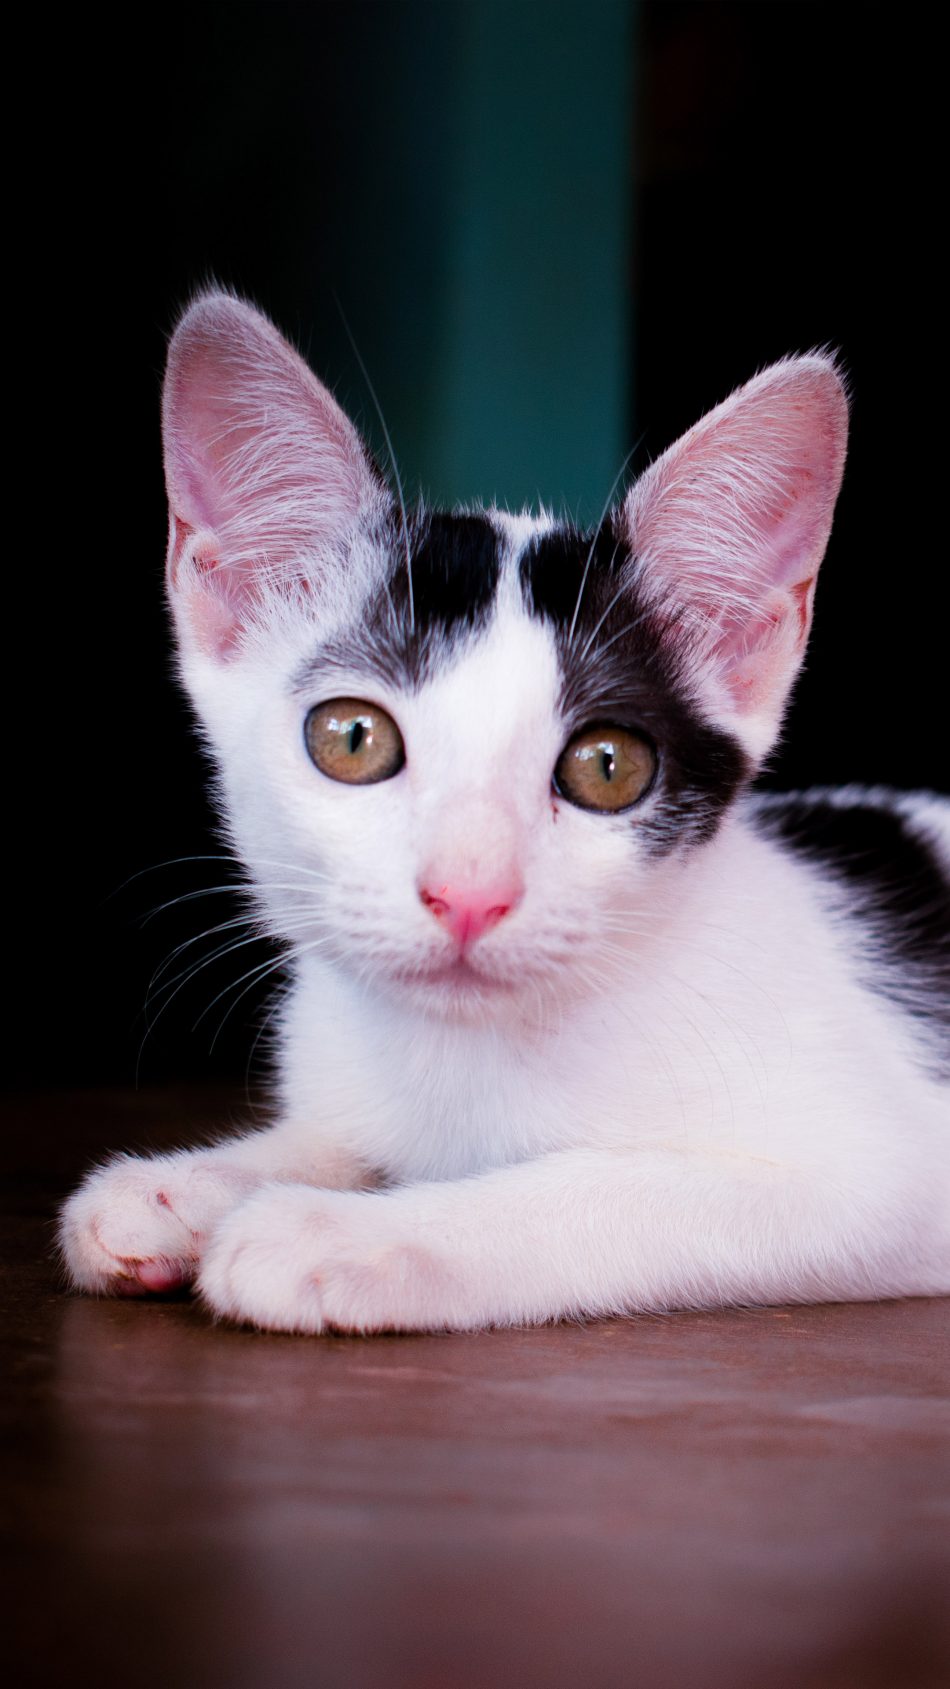 Spotty The Cutest Cat 4K Ultra HD Mobile Wallpaper